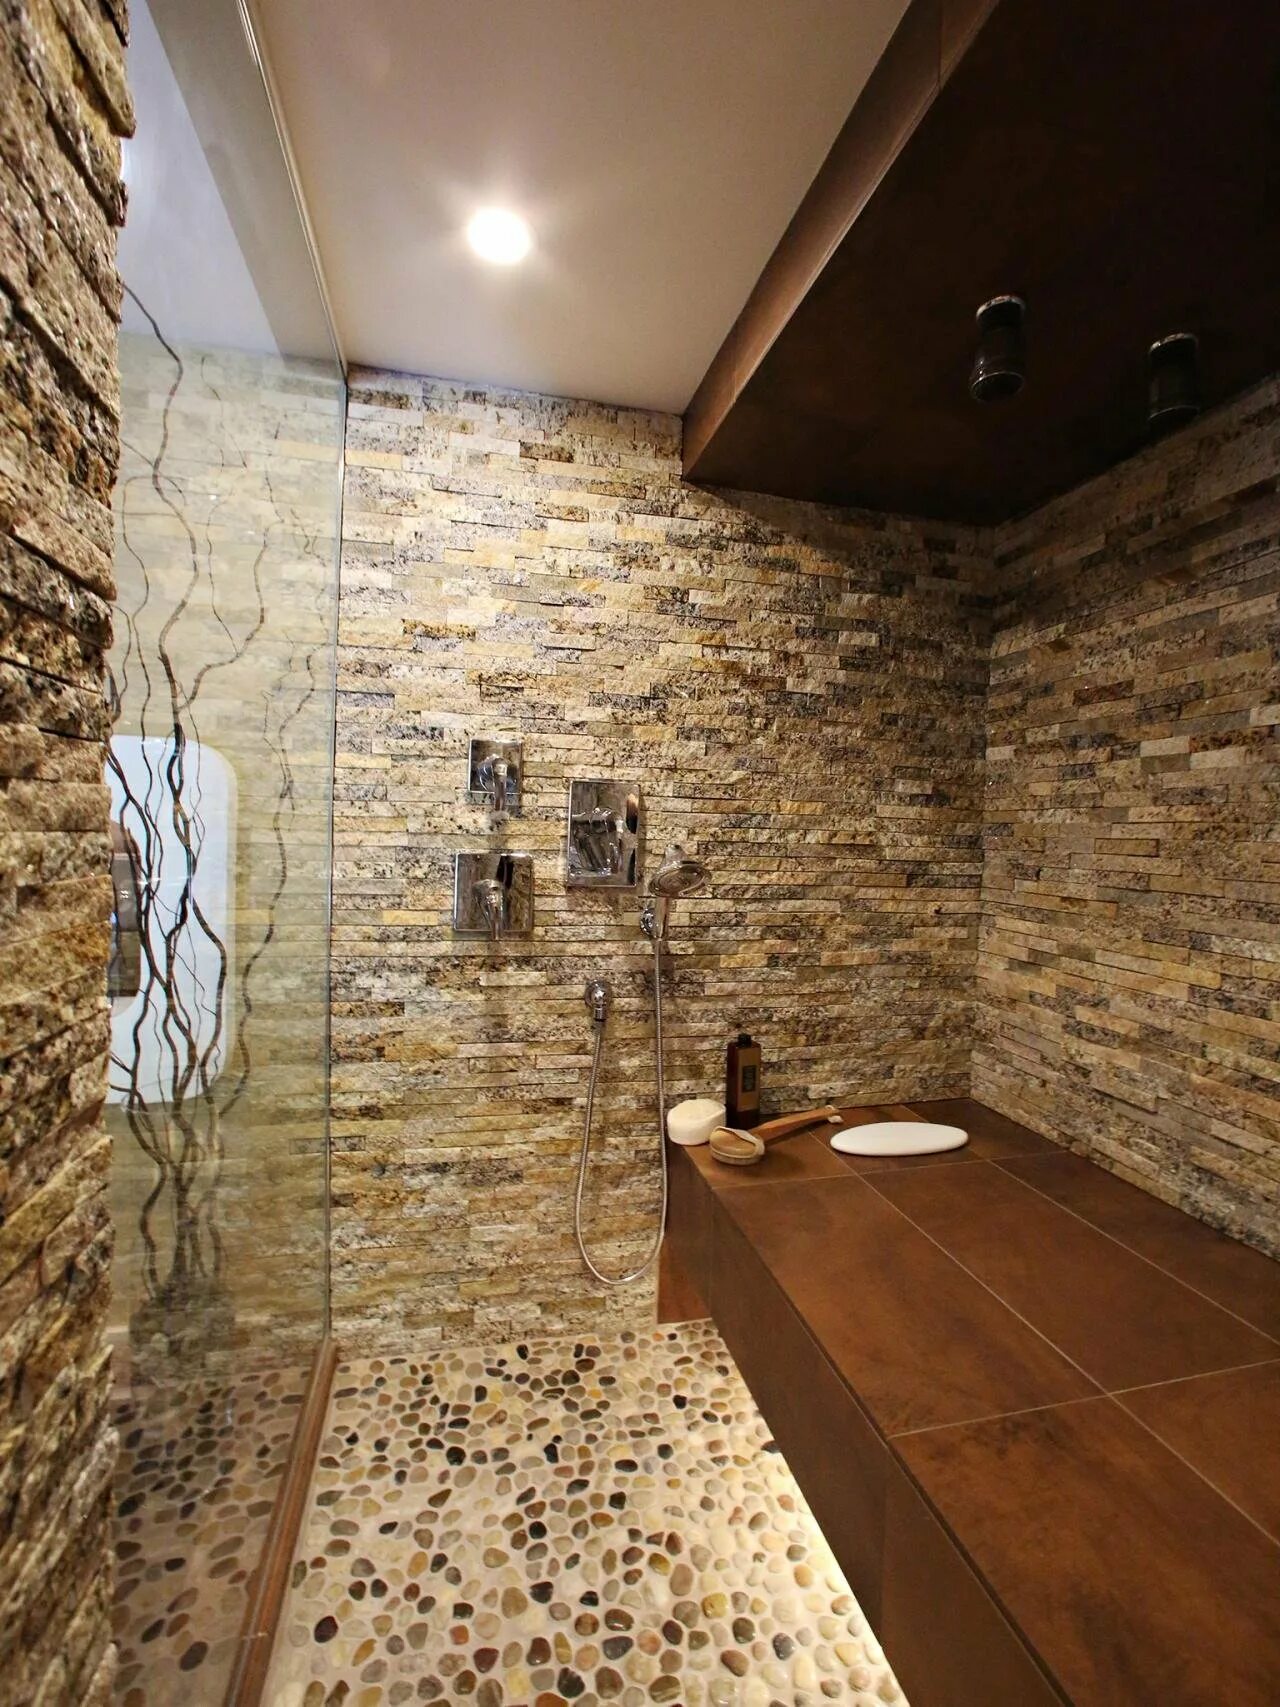 Отделка ванной комнаты камнем. Ванная отделанная камнем. Отделка ванной искусственным камнем. Ванная комната плитка под камень.